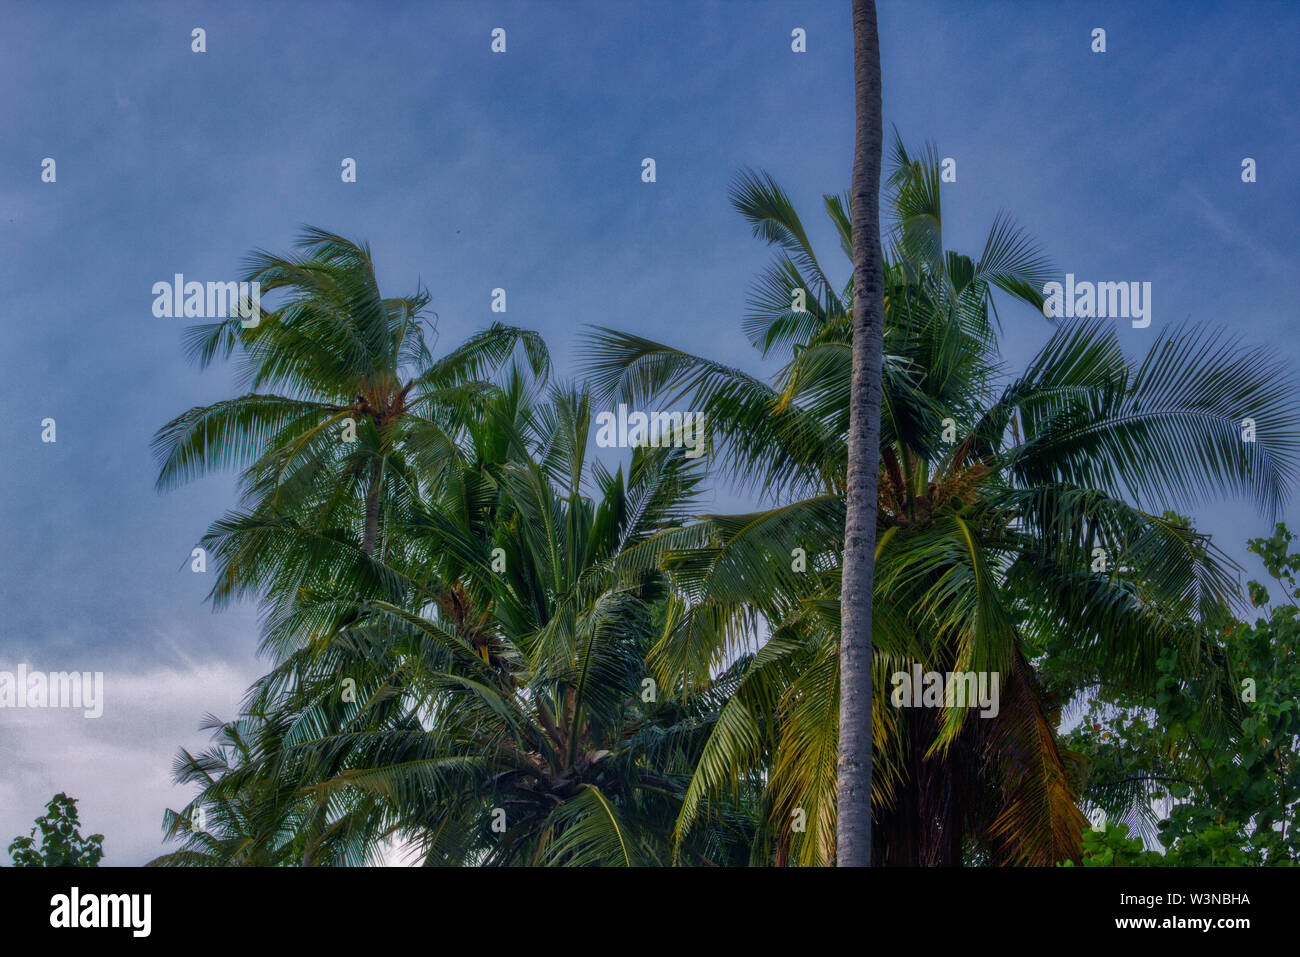 Dieses einzigartige Foto zeigt eine kokospalme fotografiert von unten nach oben. Dieses Bild wurde in den Malediven genommen Stockfoto